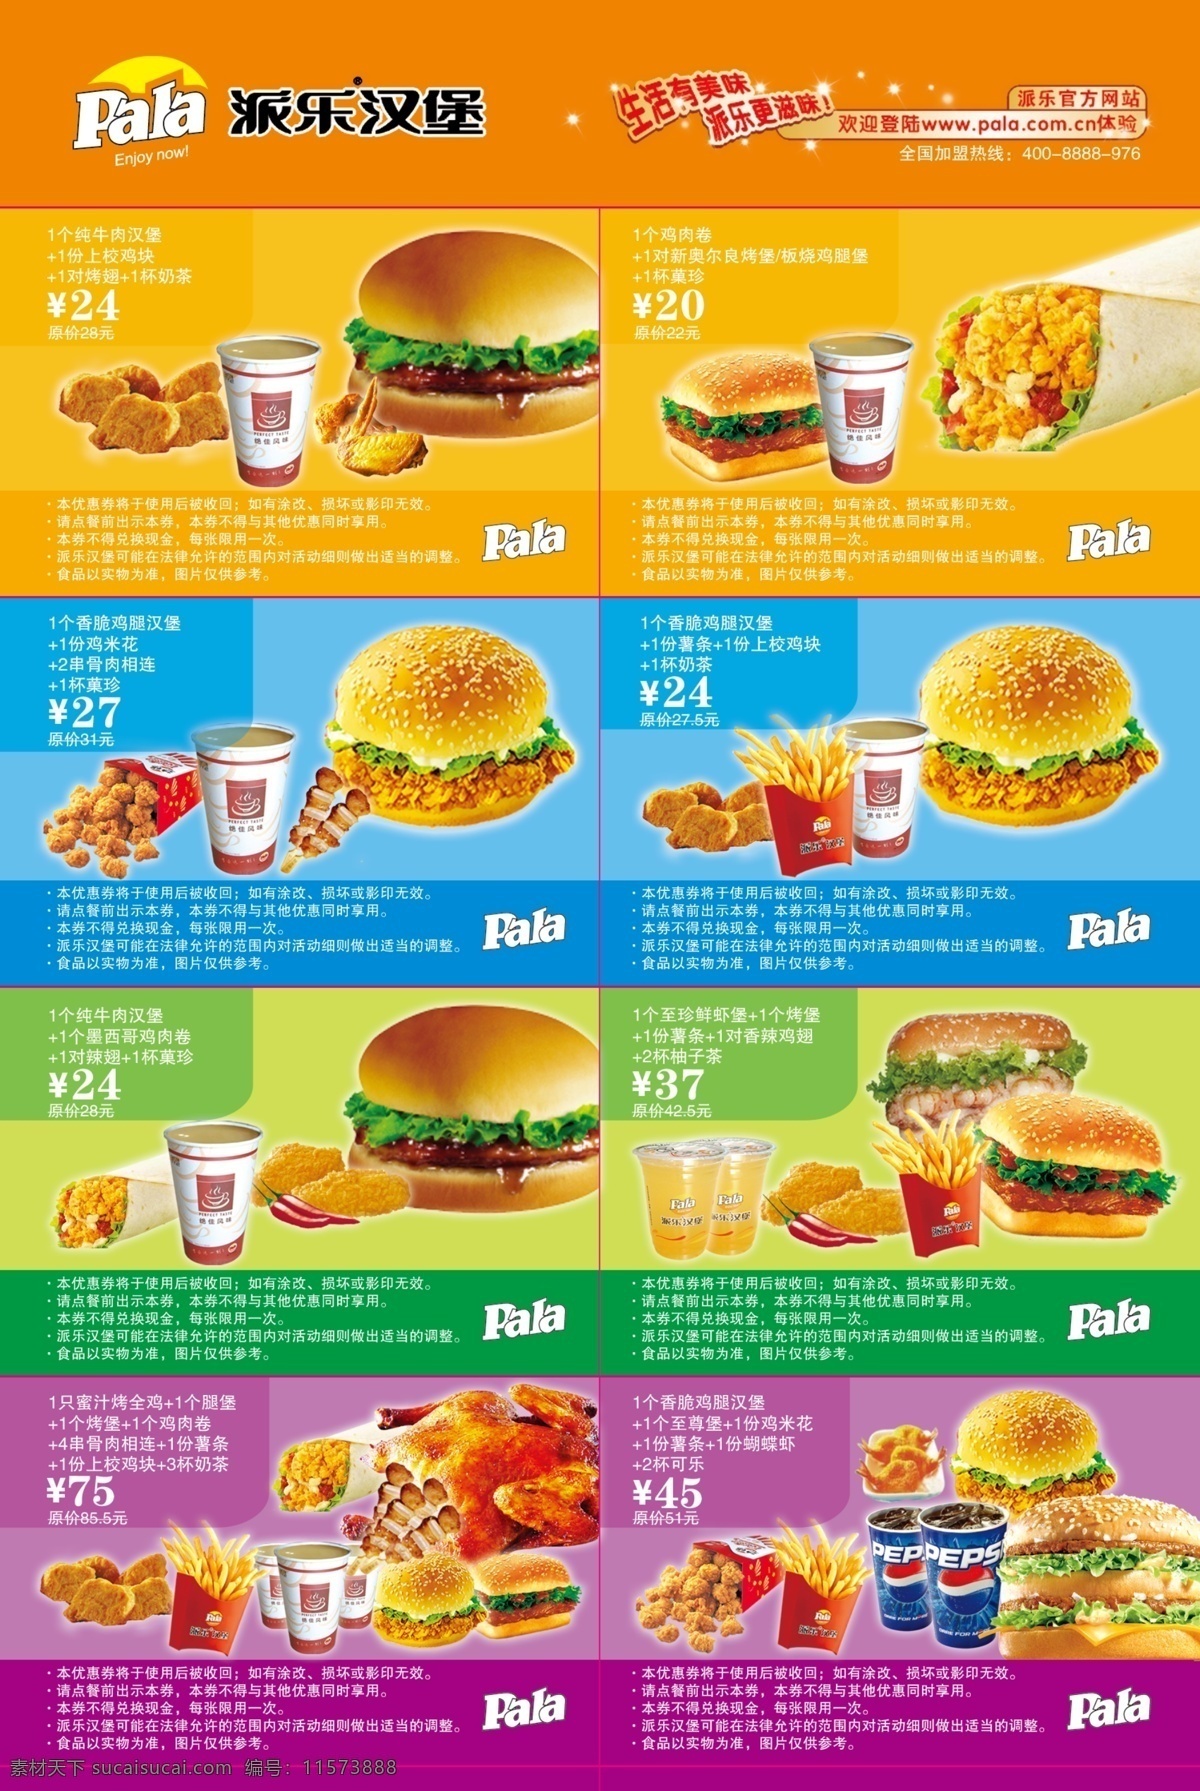 dm宣传单 广告设计模板 汉堡 鸡肉卷 咖啡 奶茶 套餐 优惠券 派 乐 模板下载 派乐汉堡 源文件